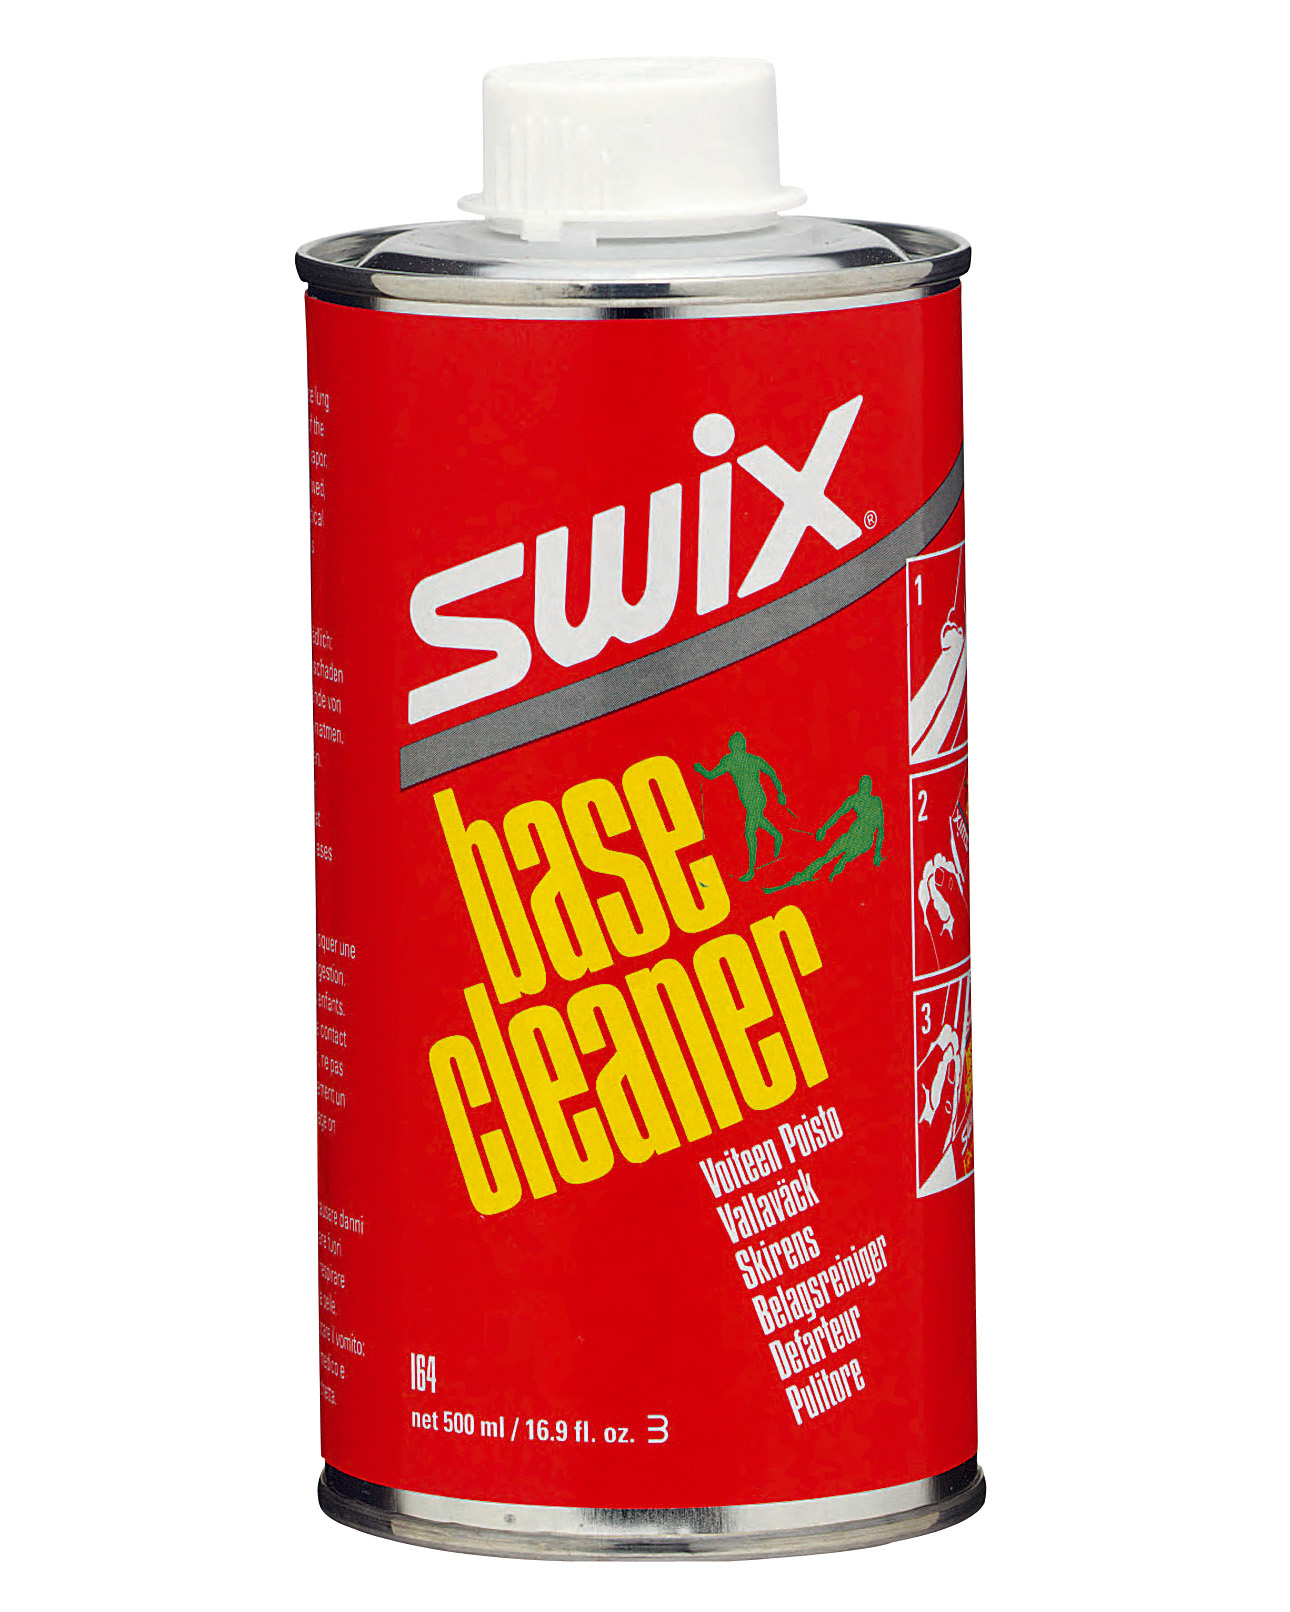 Swix Liquid Base Cleaner - 500ml - Bushtukah